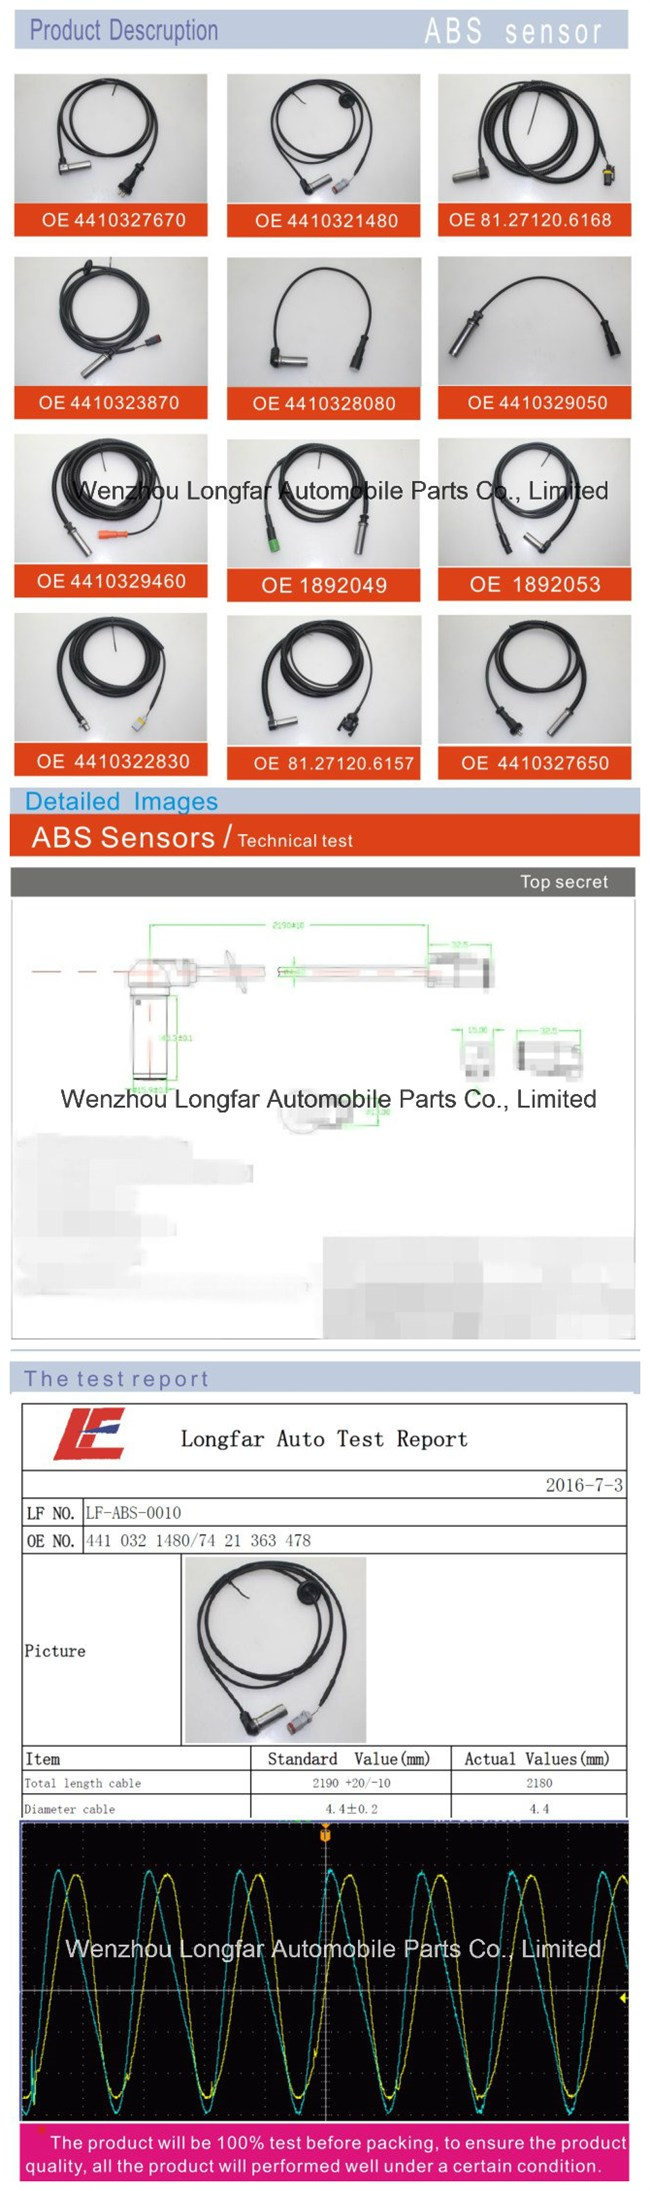 Auto Crankshaft Position Sensor Engine Speed Transducer Indicator Sensor 13627525015,Su12910,3965042140,7756925,7799033,V20-72-0074 for BMW,Hyundai,Wells,Fia